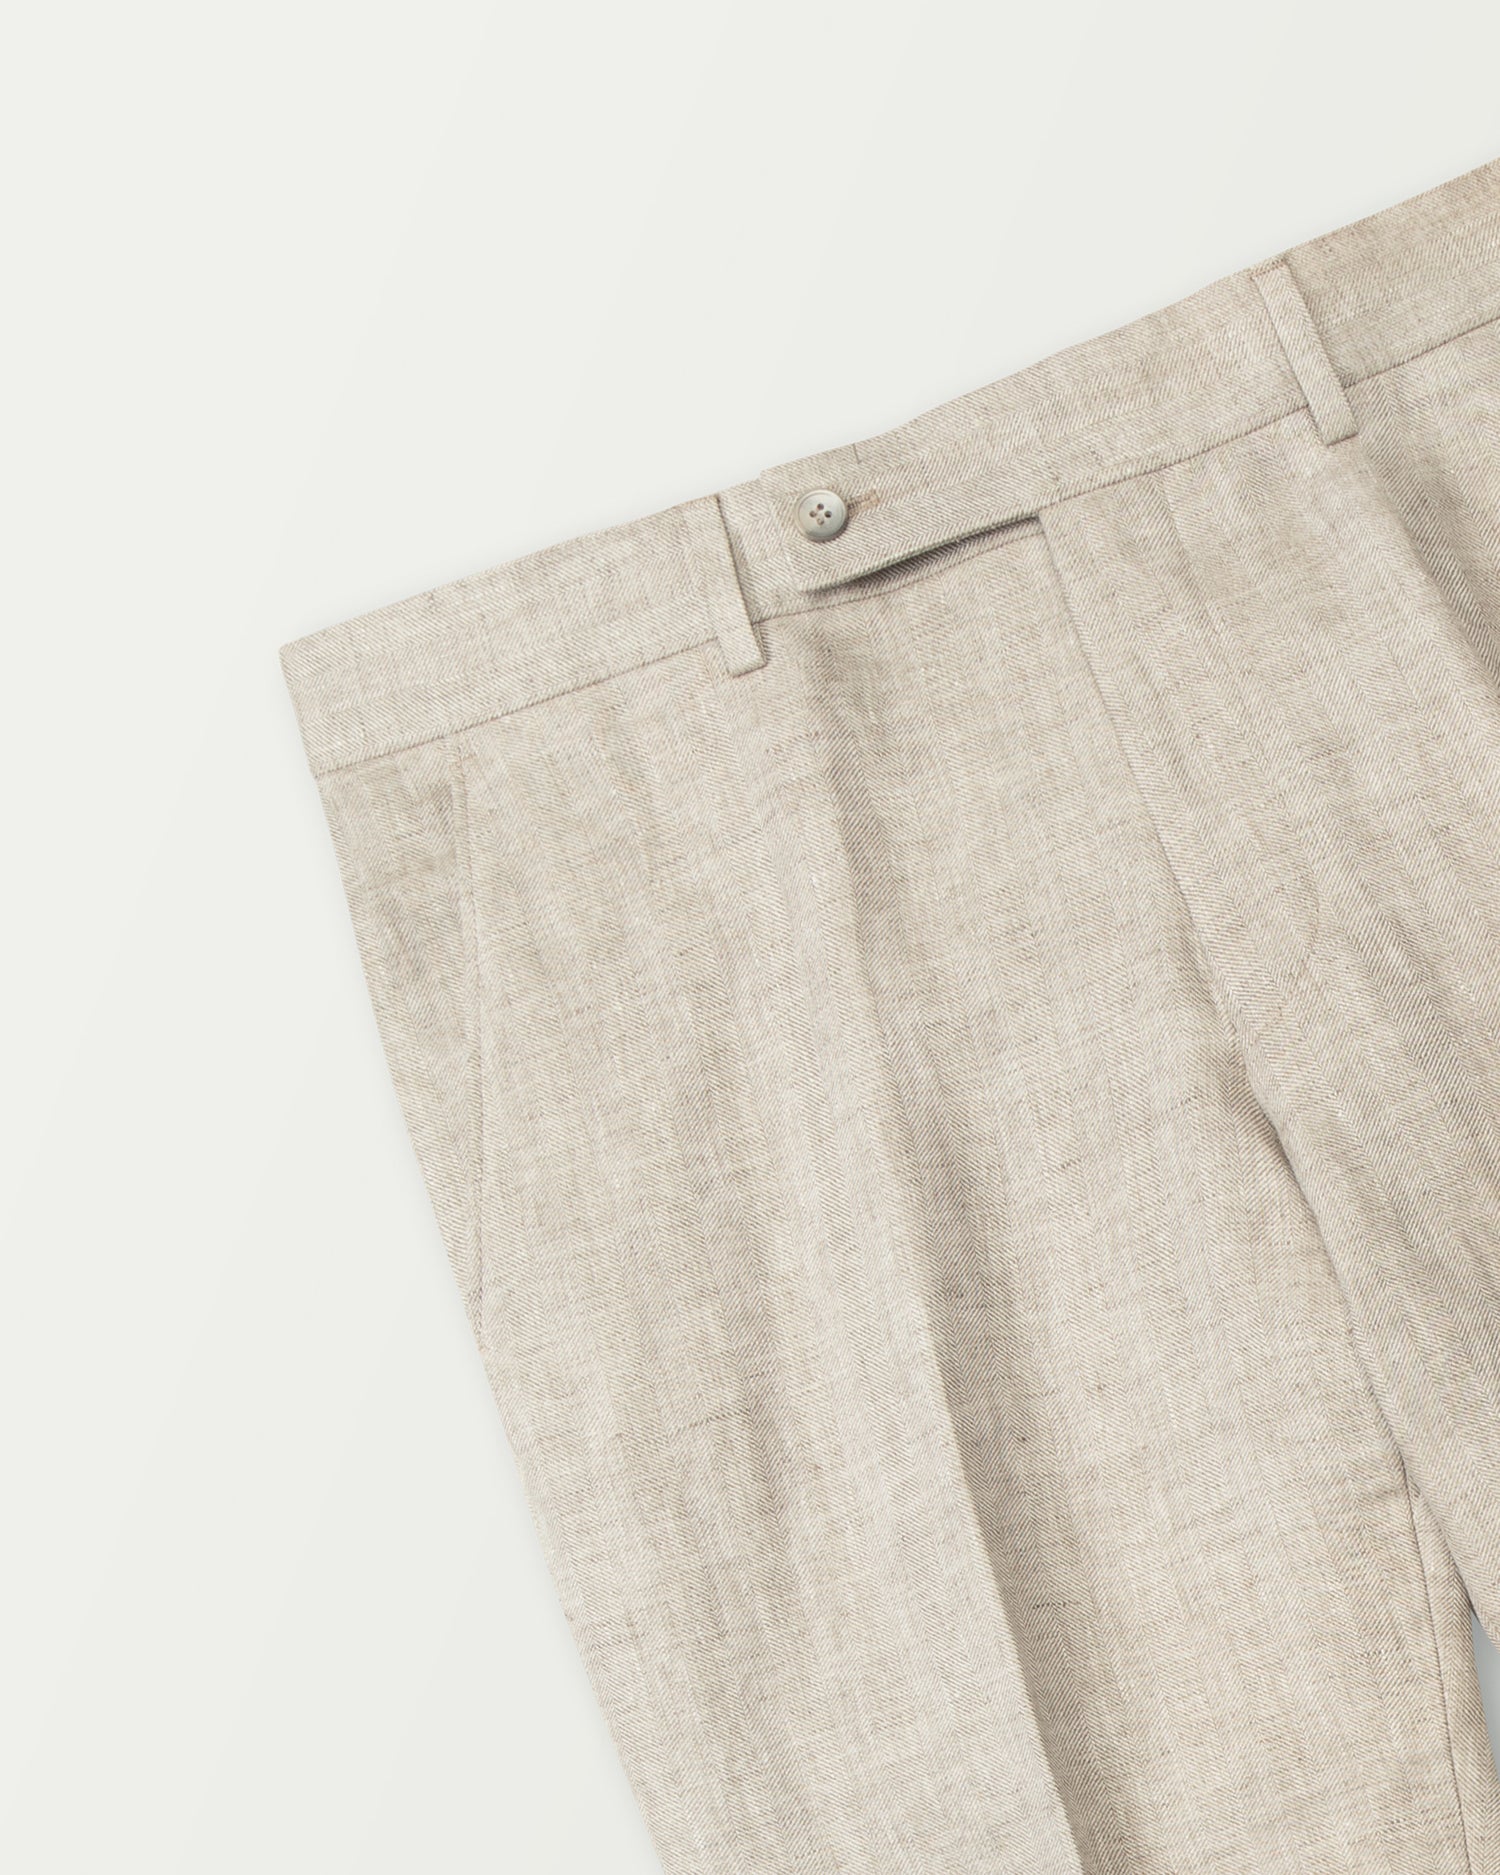 Linen Trousers in Light Beige (8625018995018)